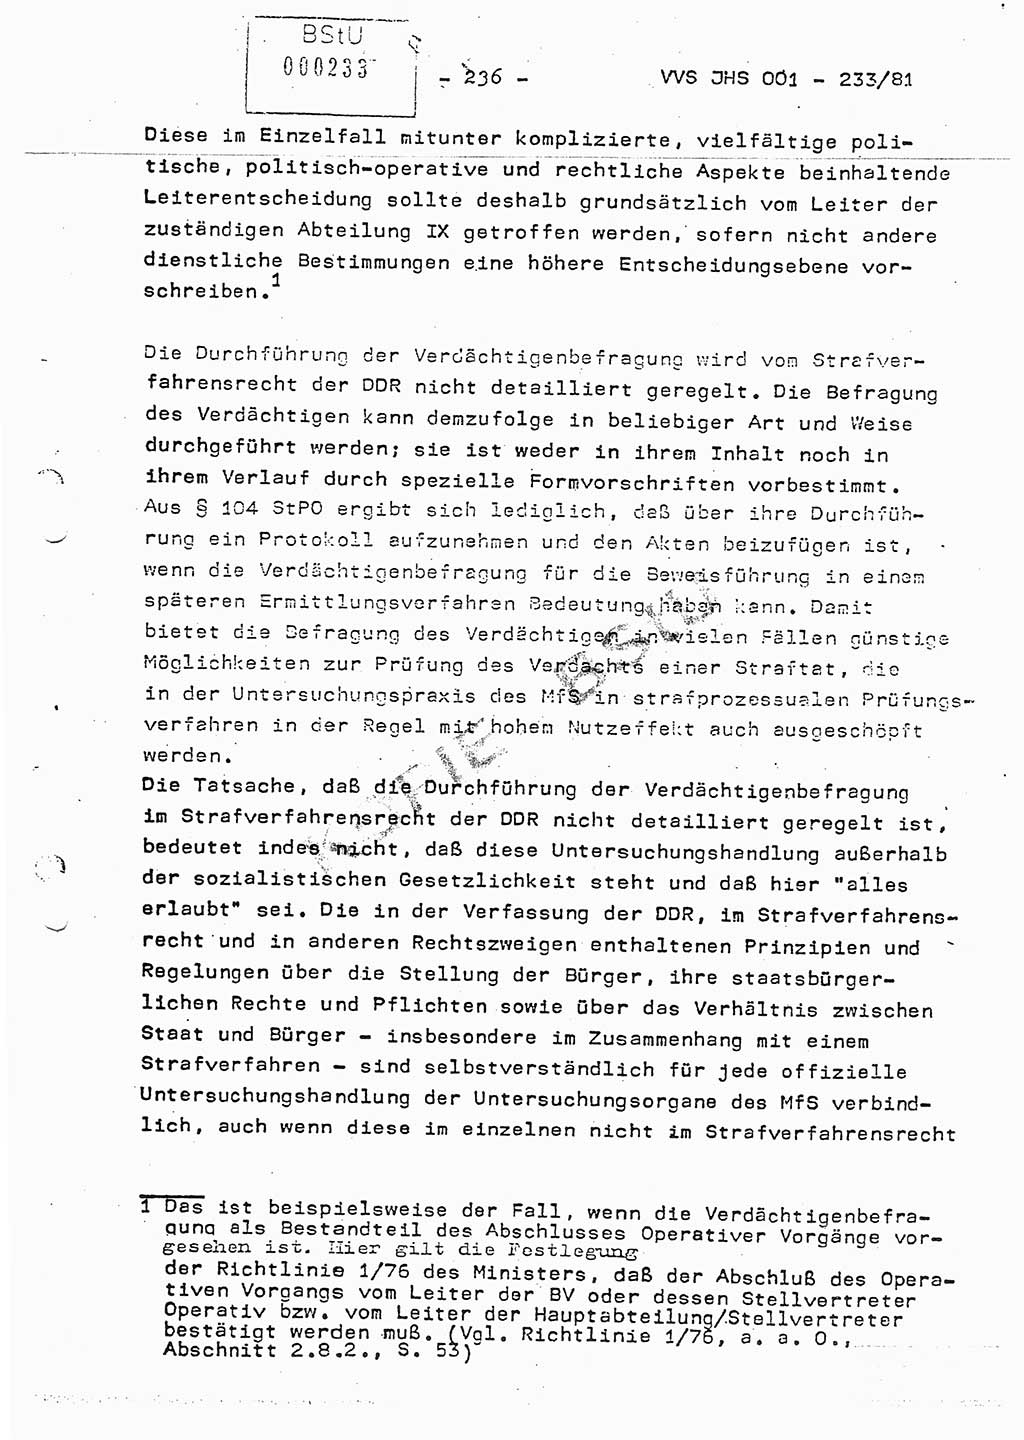 Dissertation Oberstleutnant Horst Zank (JHS), Oberstleutnant Dr. Karl-Heinz Knoblauch (JHS), Oberstleutnant Gustav-Adolf Kowalewski (HA Ⅸ), Oberstleutnant Wolfgang Plötner (HA Ⅸ), Ministerium für Staatssicherheit (MfS) [Deutsche Demokratische Republik (DDR)], Juristische Hochschule (JHS), Vertrauliche Verschlußsache (VVS) o001-233/81, Potsdam 1981, Blatt 236 (Diss. MfS DDR JHS VVS o001-233/81 1981, Bl. 236)